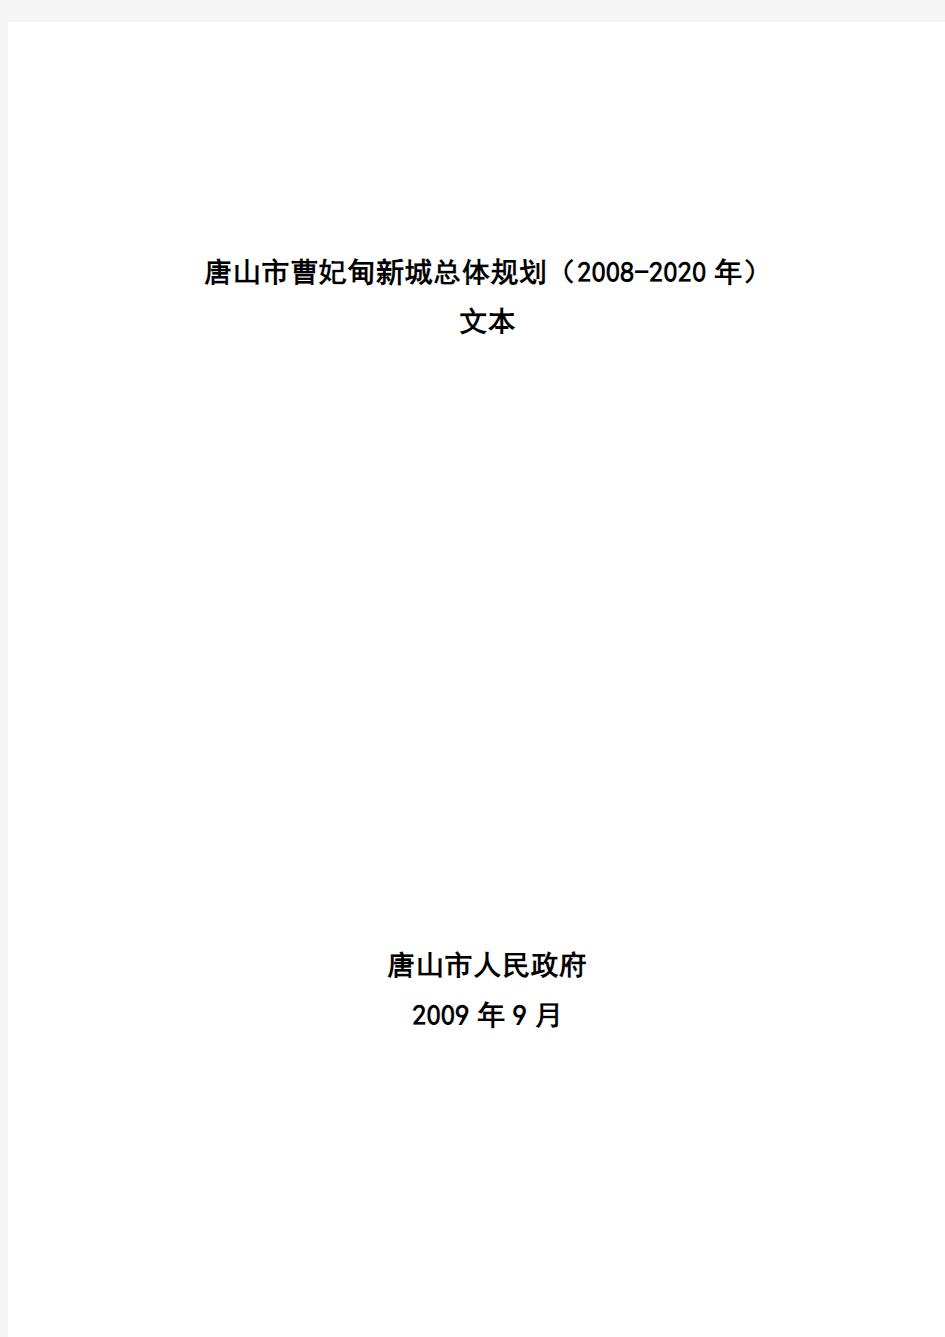 唐山市曹妃甸新城总体规划(2008-2020年)